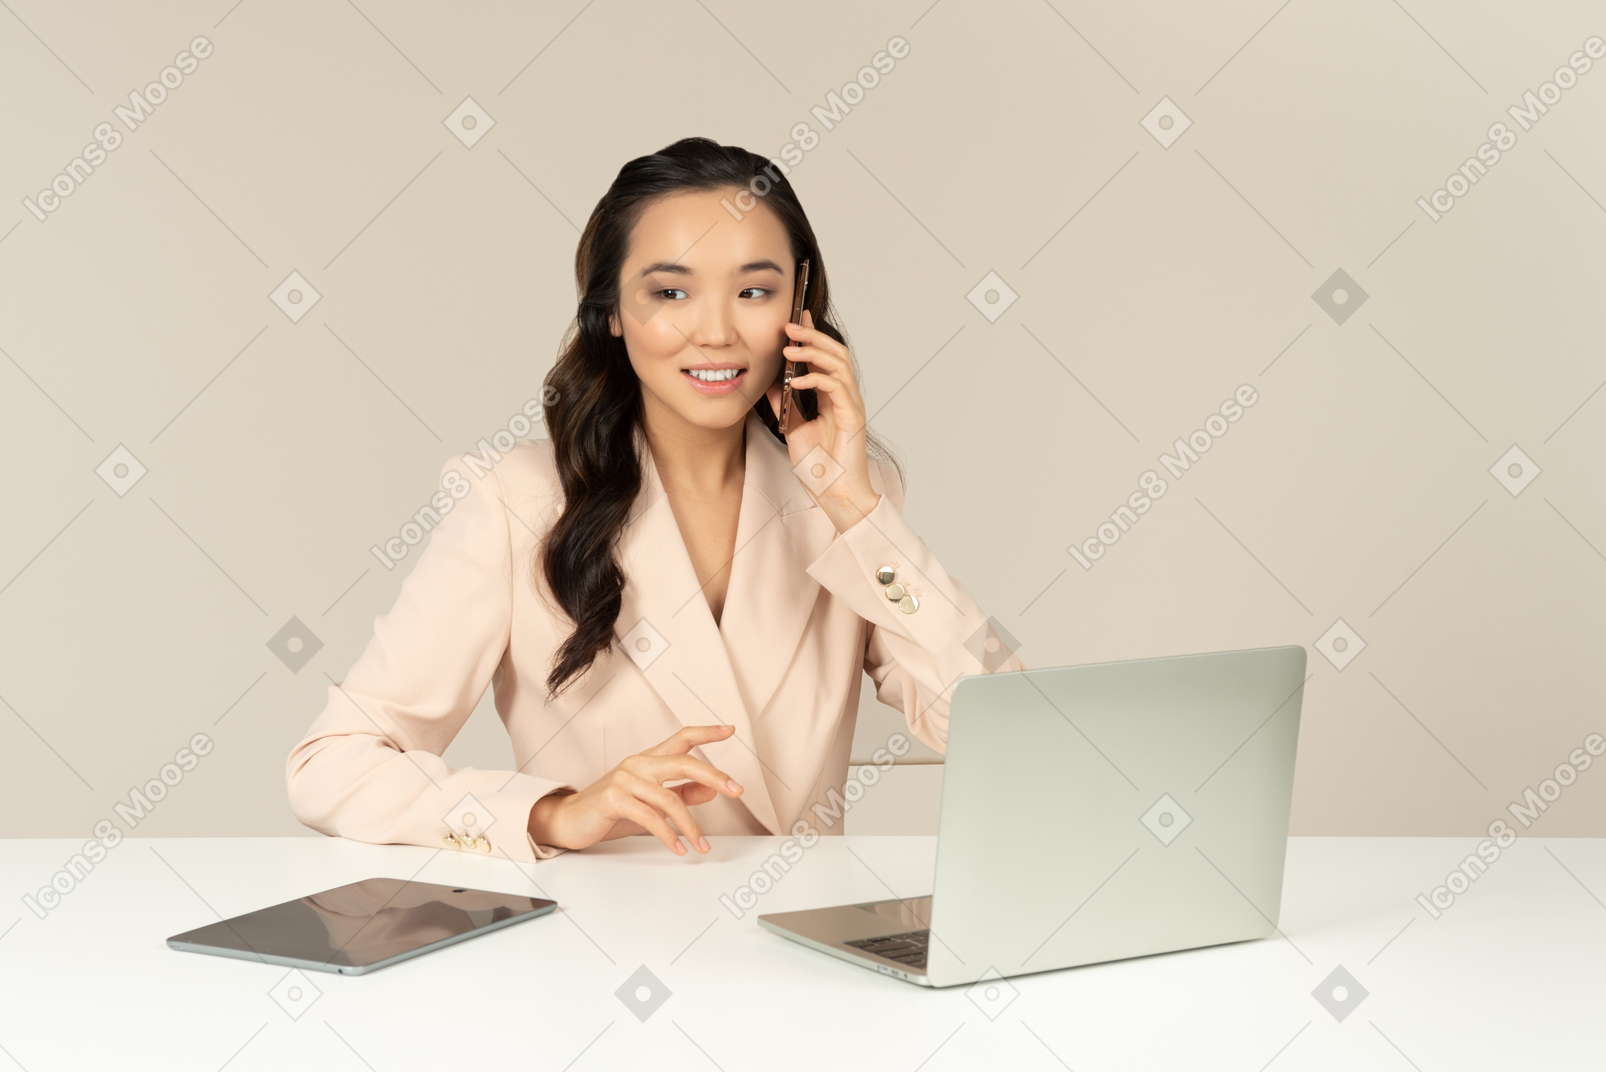 Asiatischer weiblicher büroangestellter, der am telefon spricht und an laptop arbeitet